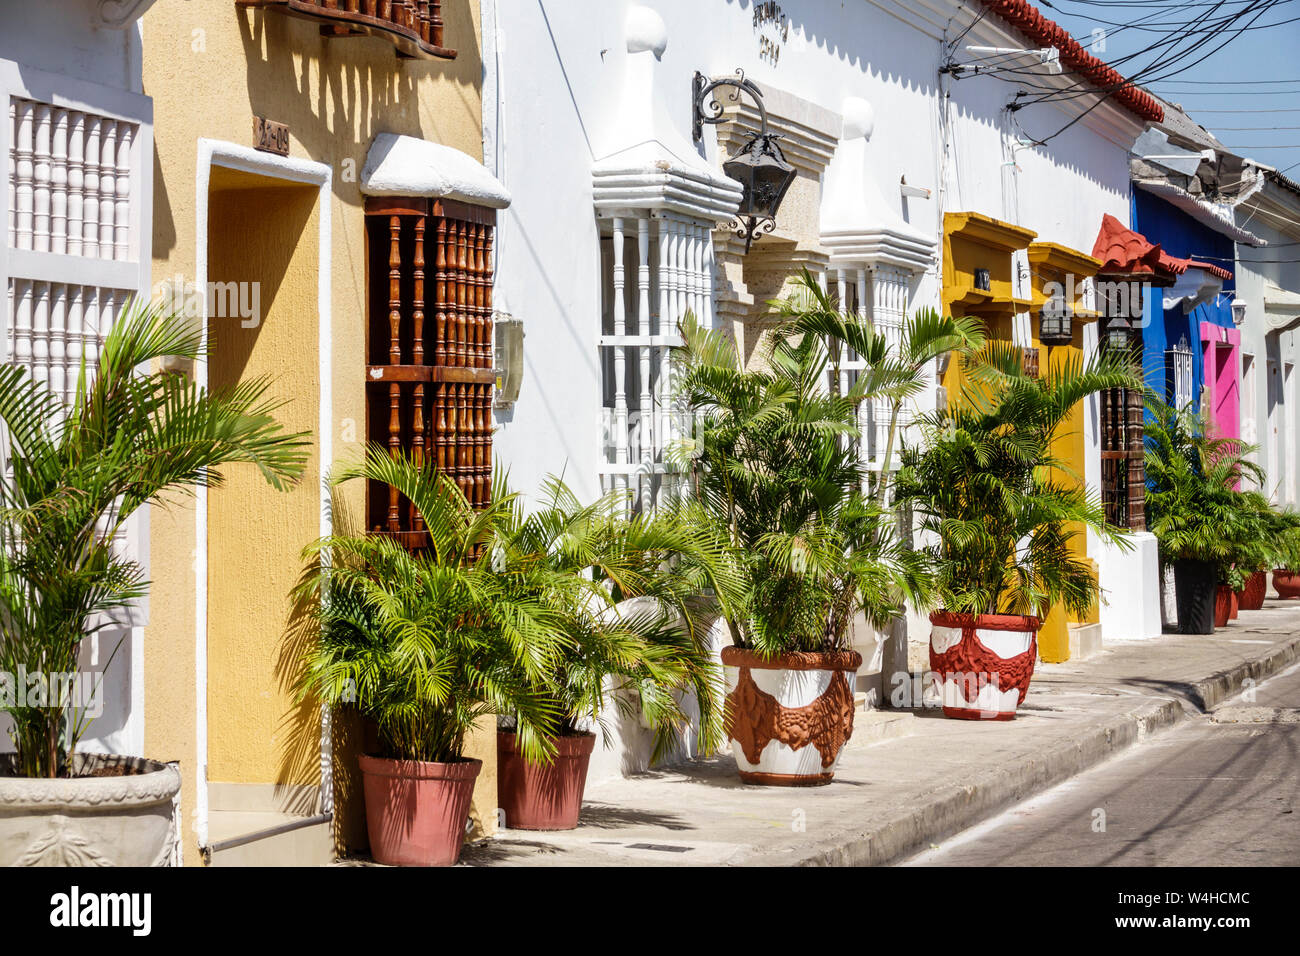 Colombie Cartagena Centre ville ancien clos de Getsemani colonia quartier façades jardinières de fenêtres en bois grils aureca palmiers maisons pittoresques Banque D'Images